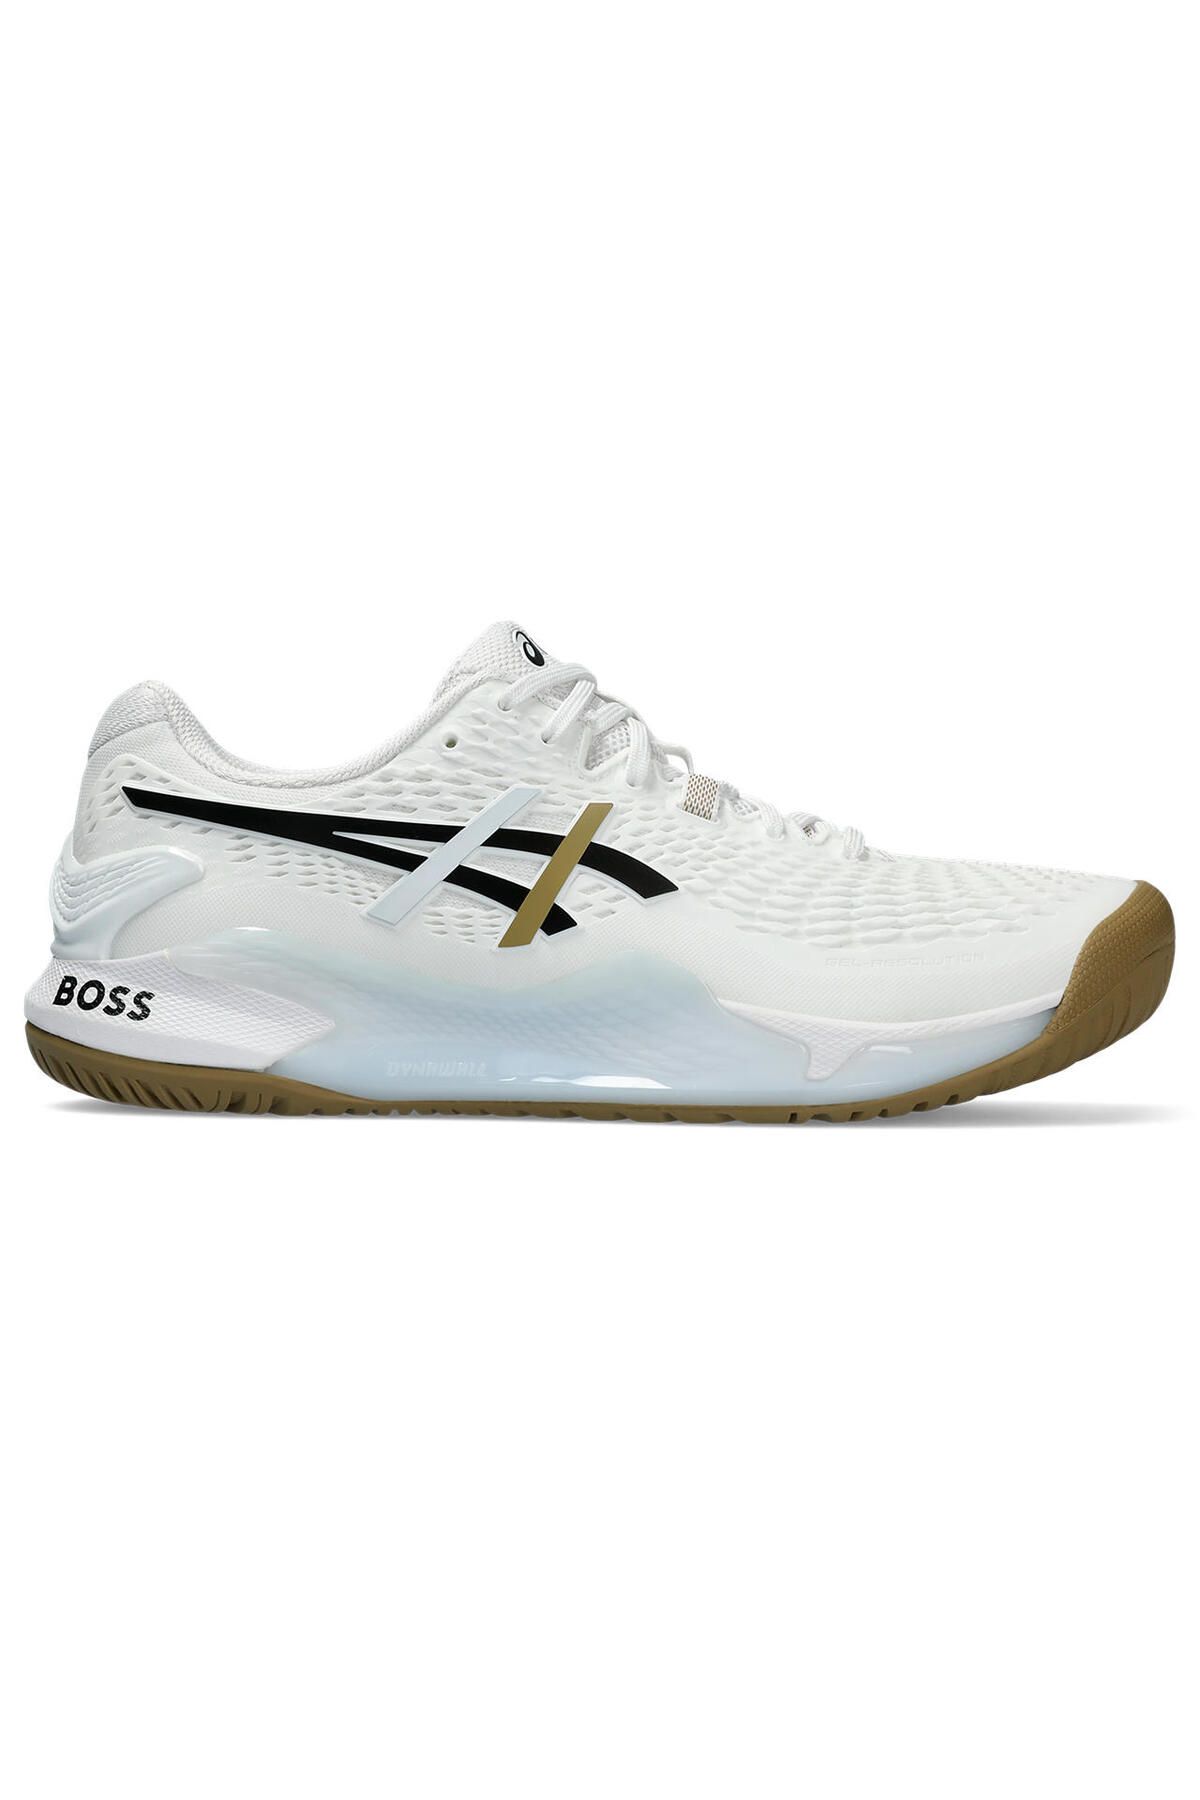 Asics Gel-resolution 9 Erkek Beyaz Tenis Ayakkabısı 1041a453-100